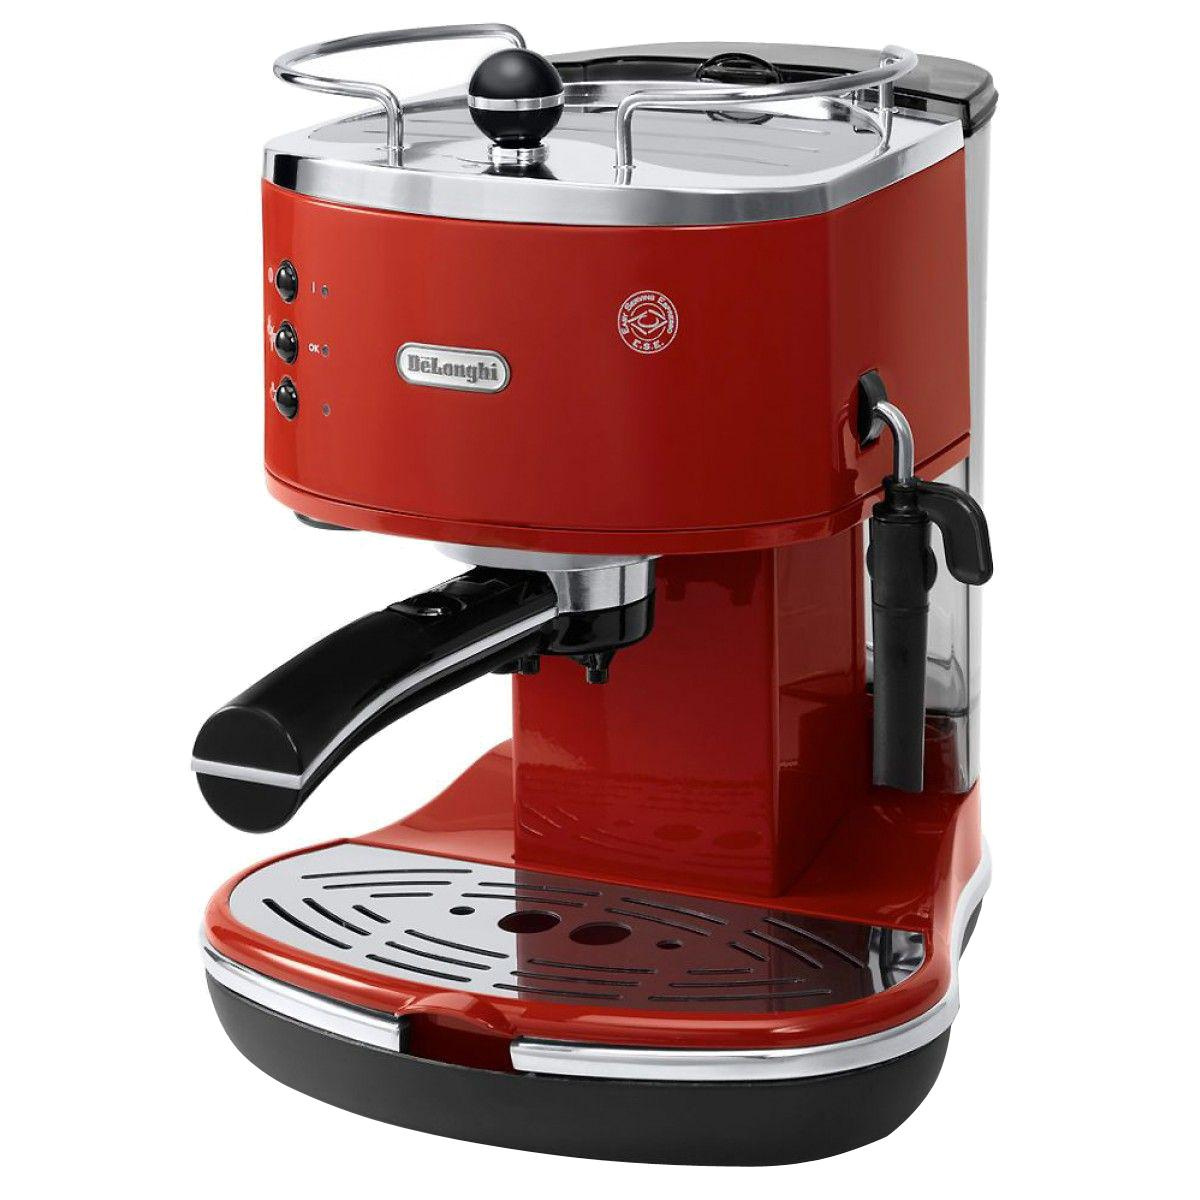 Кофеварка рожковая De’Longhi DeLonghi ECO 310.R кофеварка, красный  #1